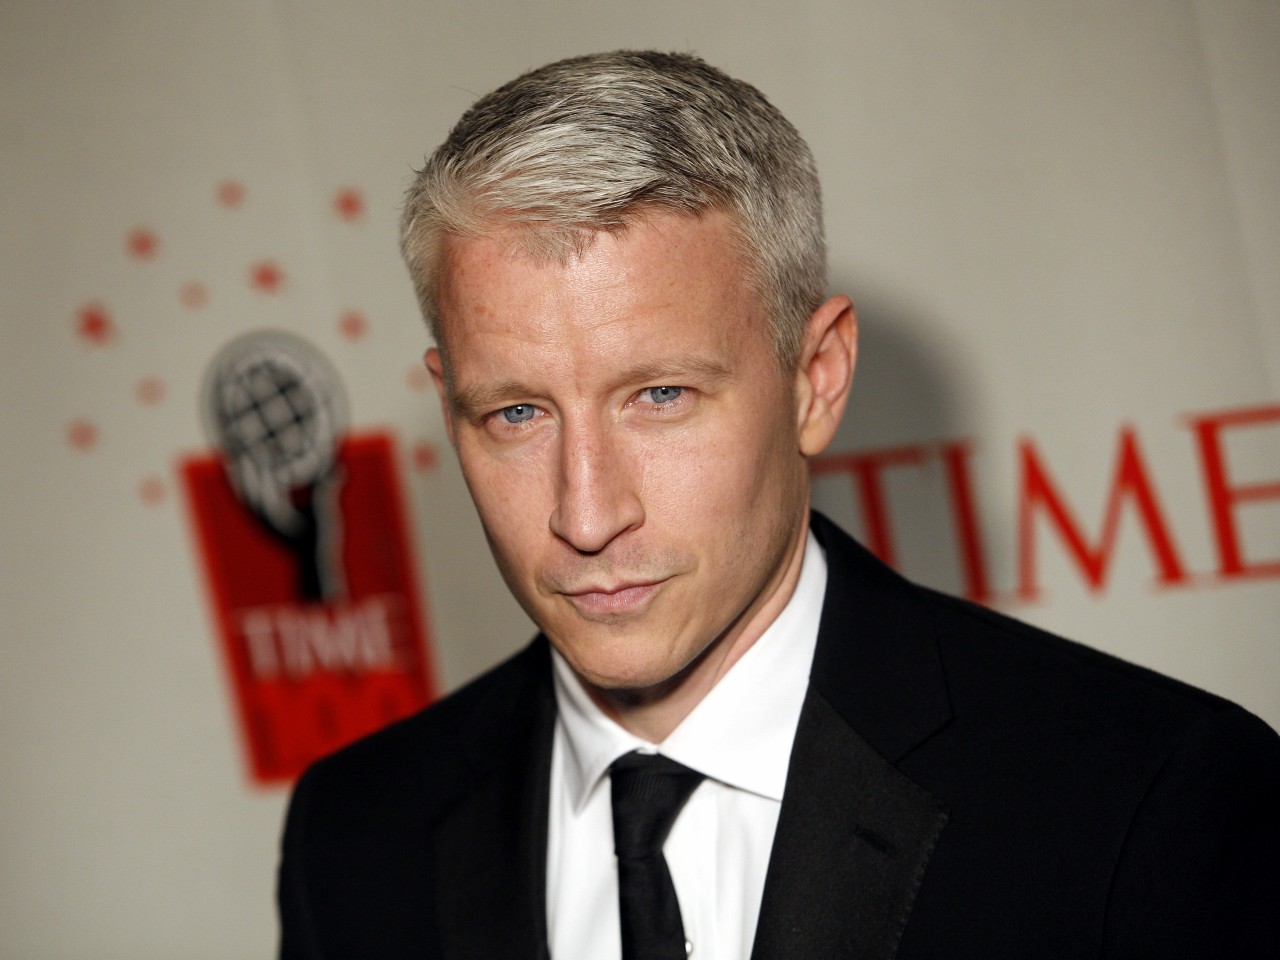 a young Anderson Cooper | Anderson cooper, Anderson, Hair cuts